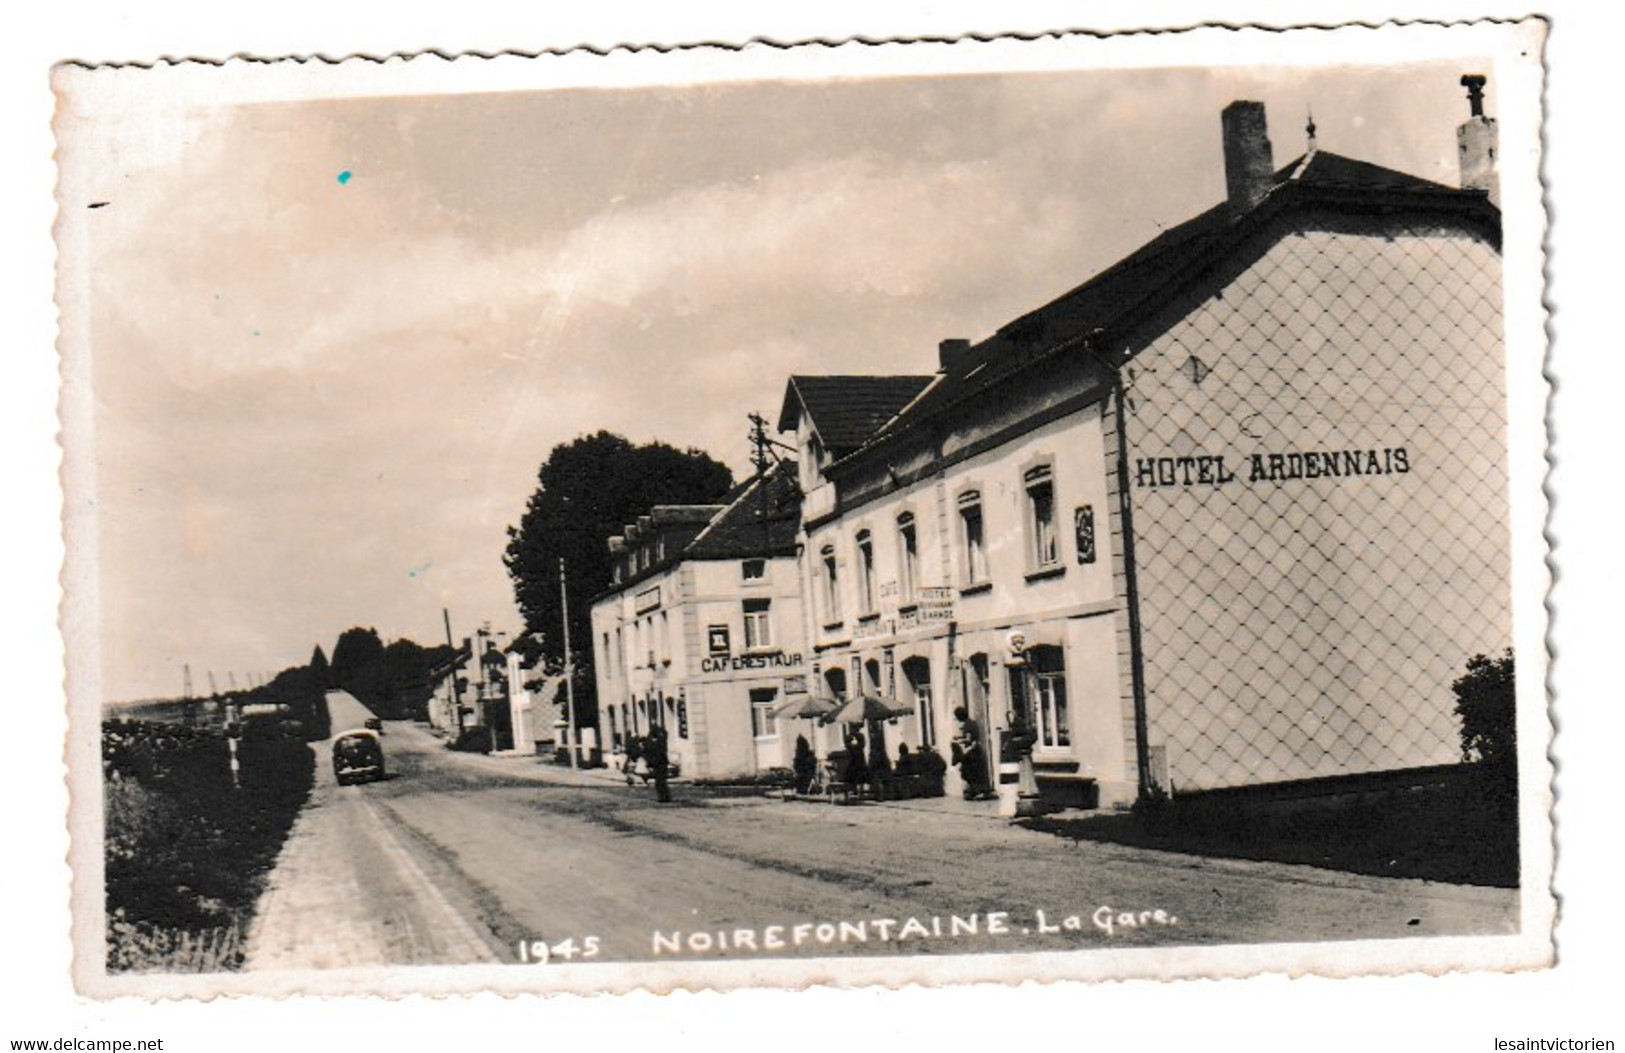 NOIREFONTAINE GARE DU TRAM 1945 HOTEL ARDENNAIS OLDTIMER - Bouillon